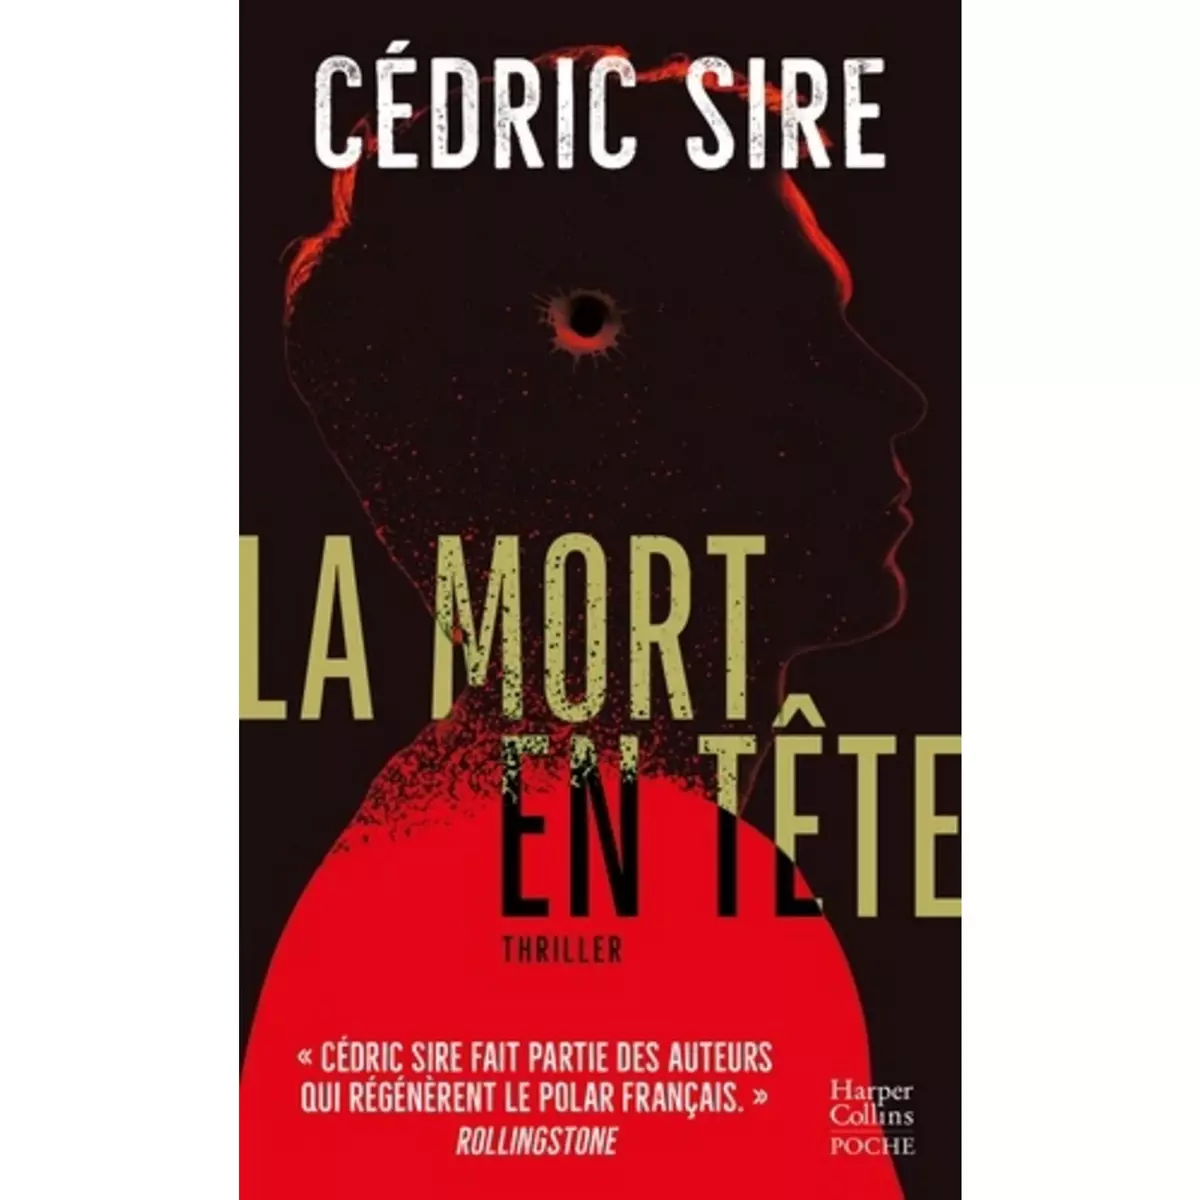  LA MORT EN TETE, Sire Cédric